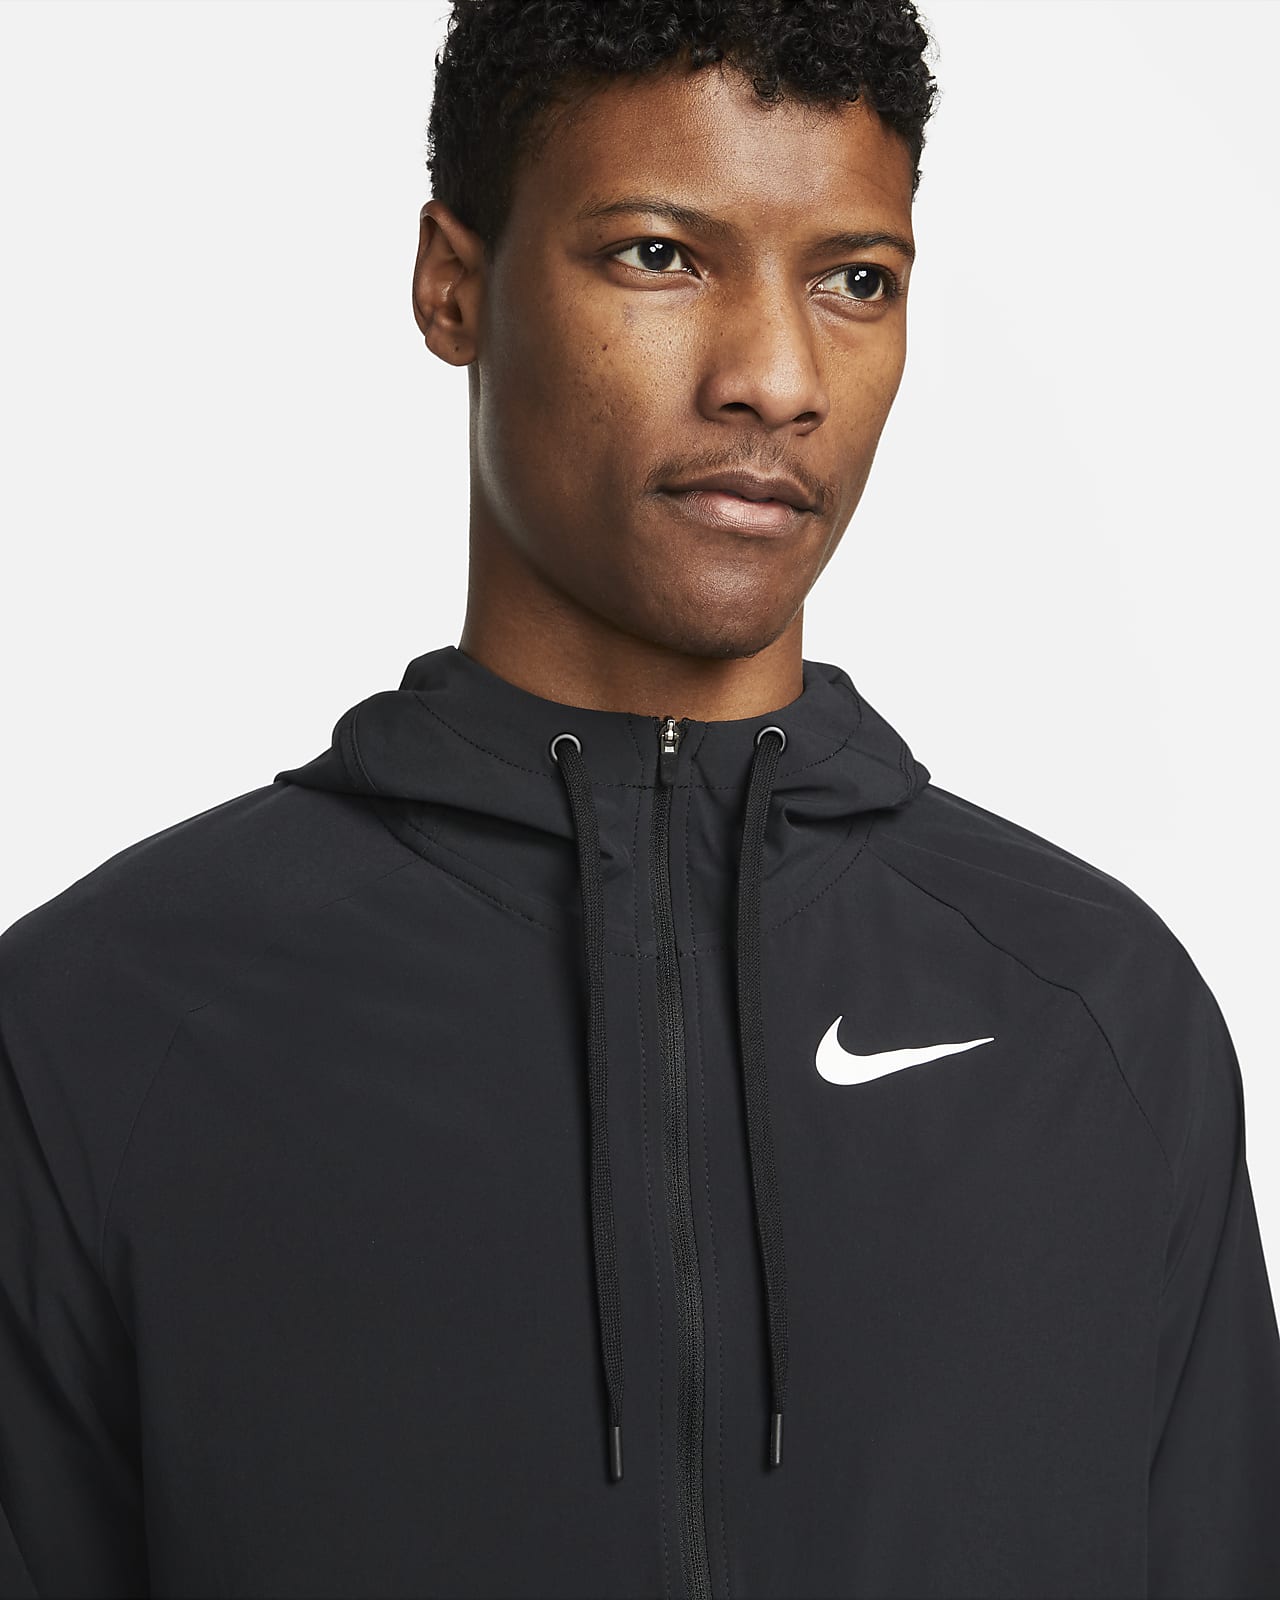 Hooded jacket Nike Pro Dri-FIT Flex Vent Max 